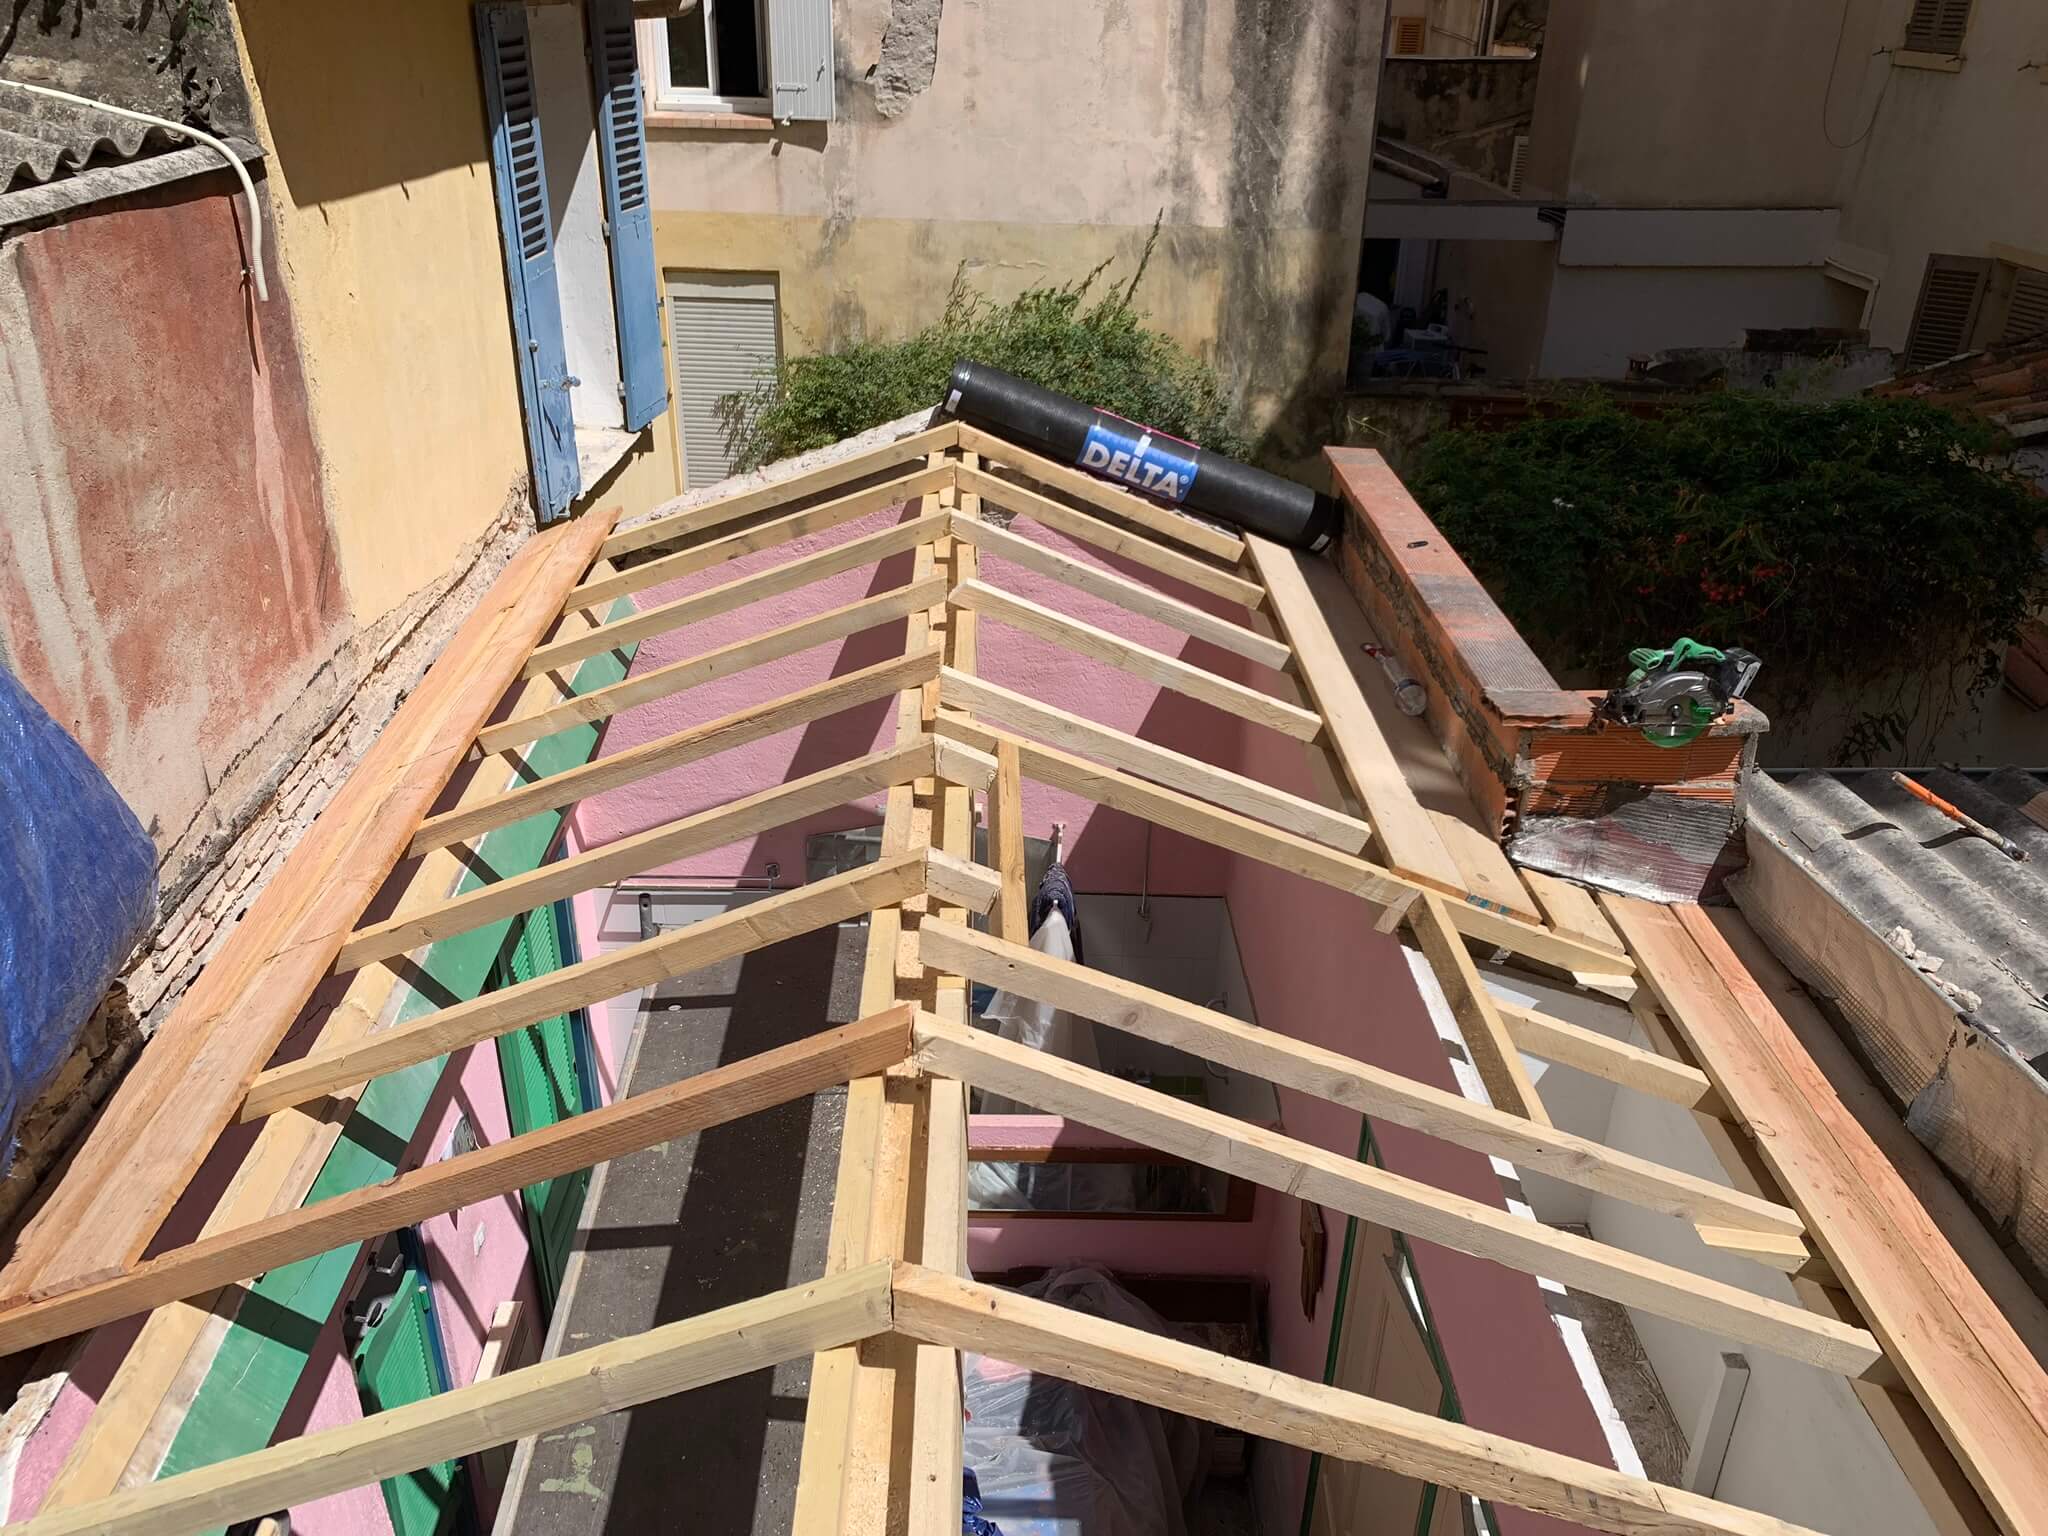 Rénovation de charpente en bois pour la rénovation de votre toiture par Stanegri Toiture, artisan Couvreur Toiture Zinguerie à Toulon